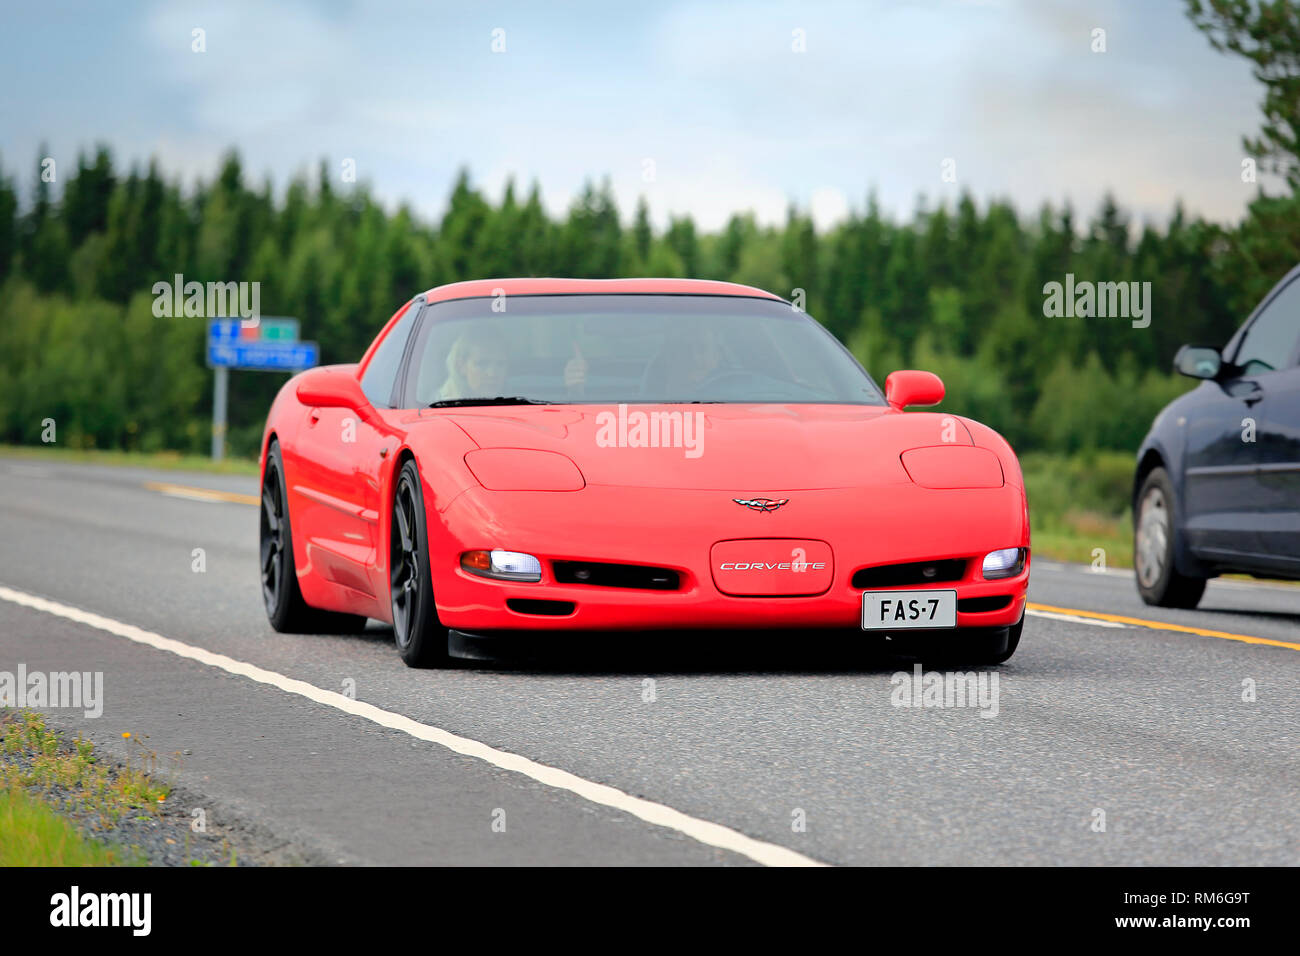 Ikaalinen, Finlandia - 12 agosto 2018: Rosso Chevrolet Corvette auto sportiva crociera lungo l'autostrada su un giorno d'estate. Foto Stock